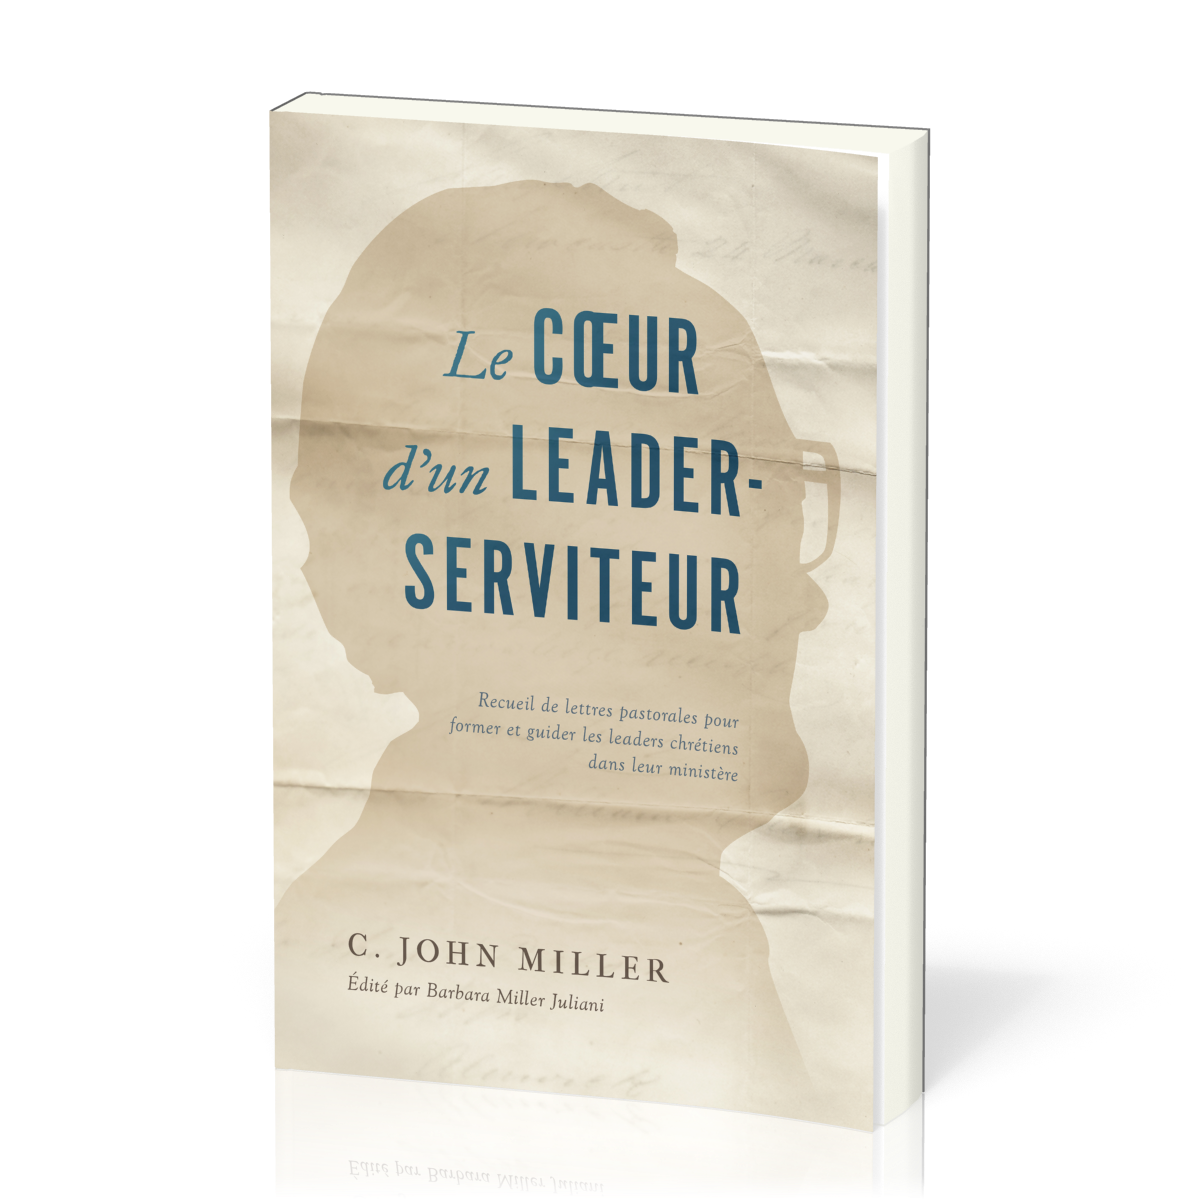 Cœur d'un leader-serviteur (Le) - Recueil de lettres pastorales pour former et guider les leaders chrétiens dans leur ministère